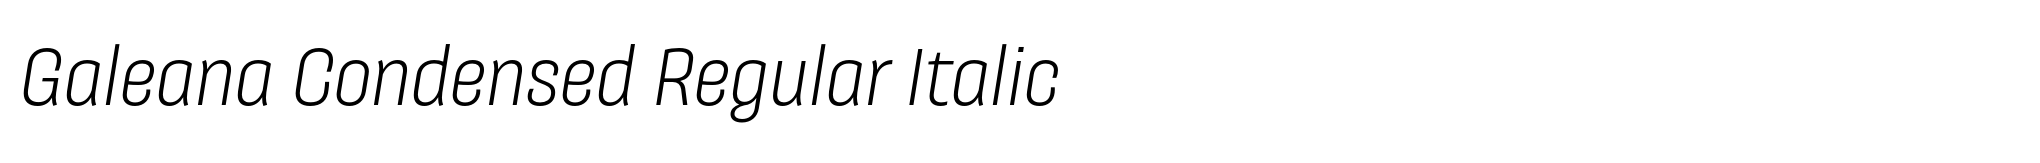 Galeana Condensed Regular Italic image